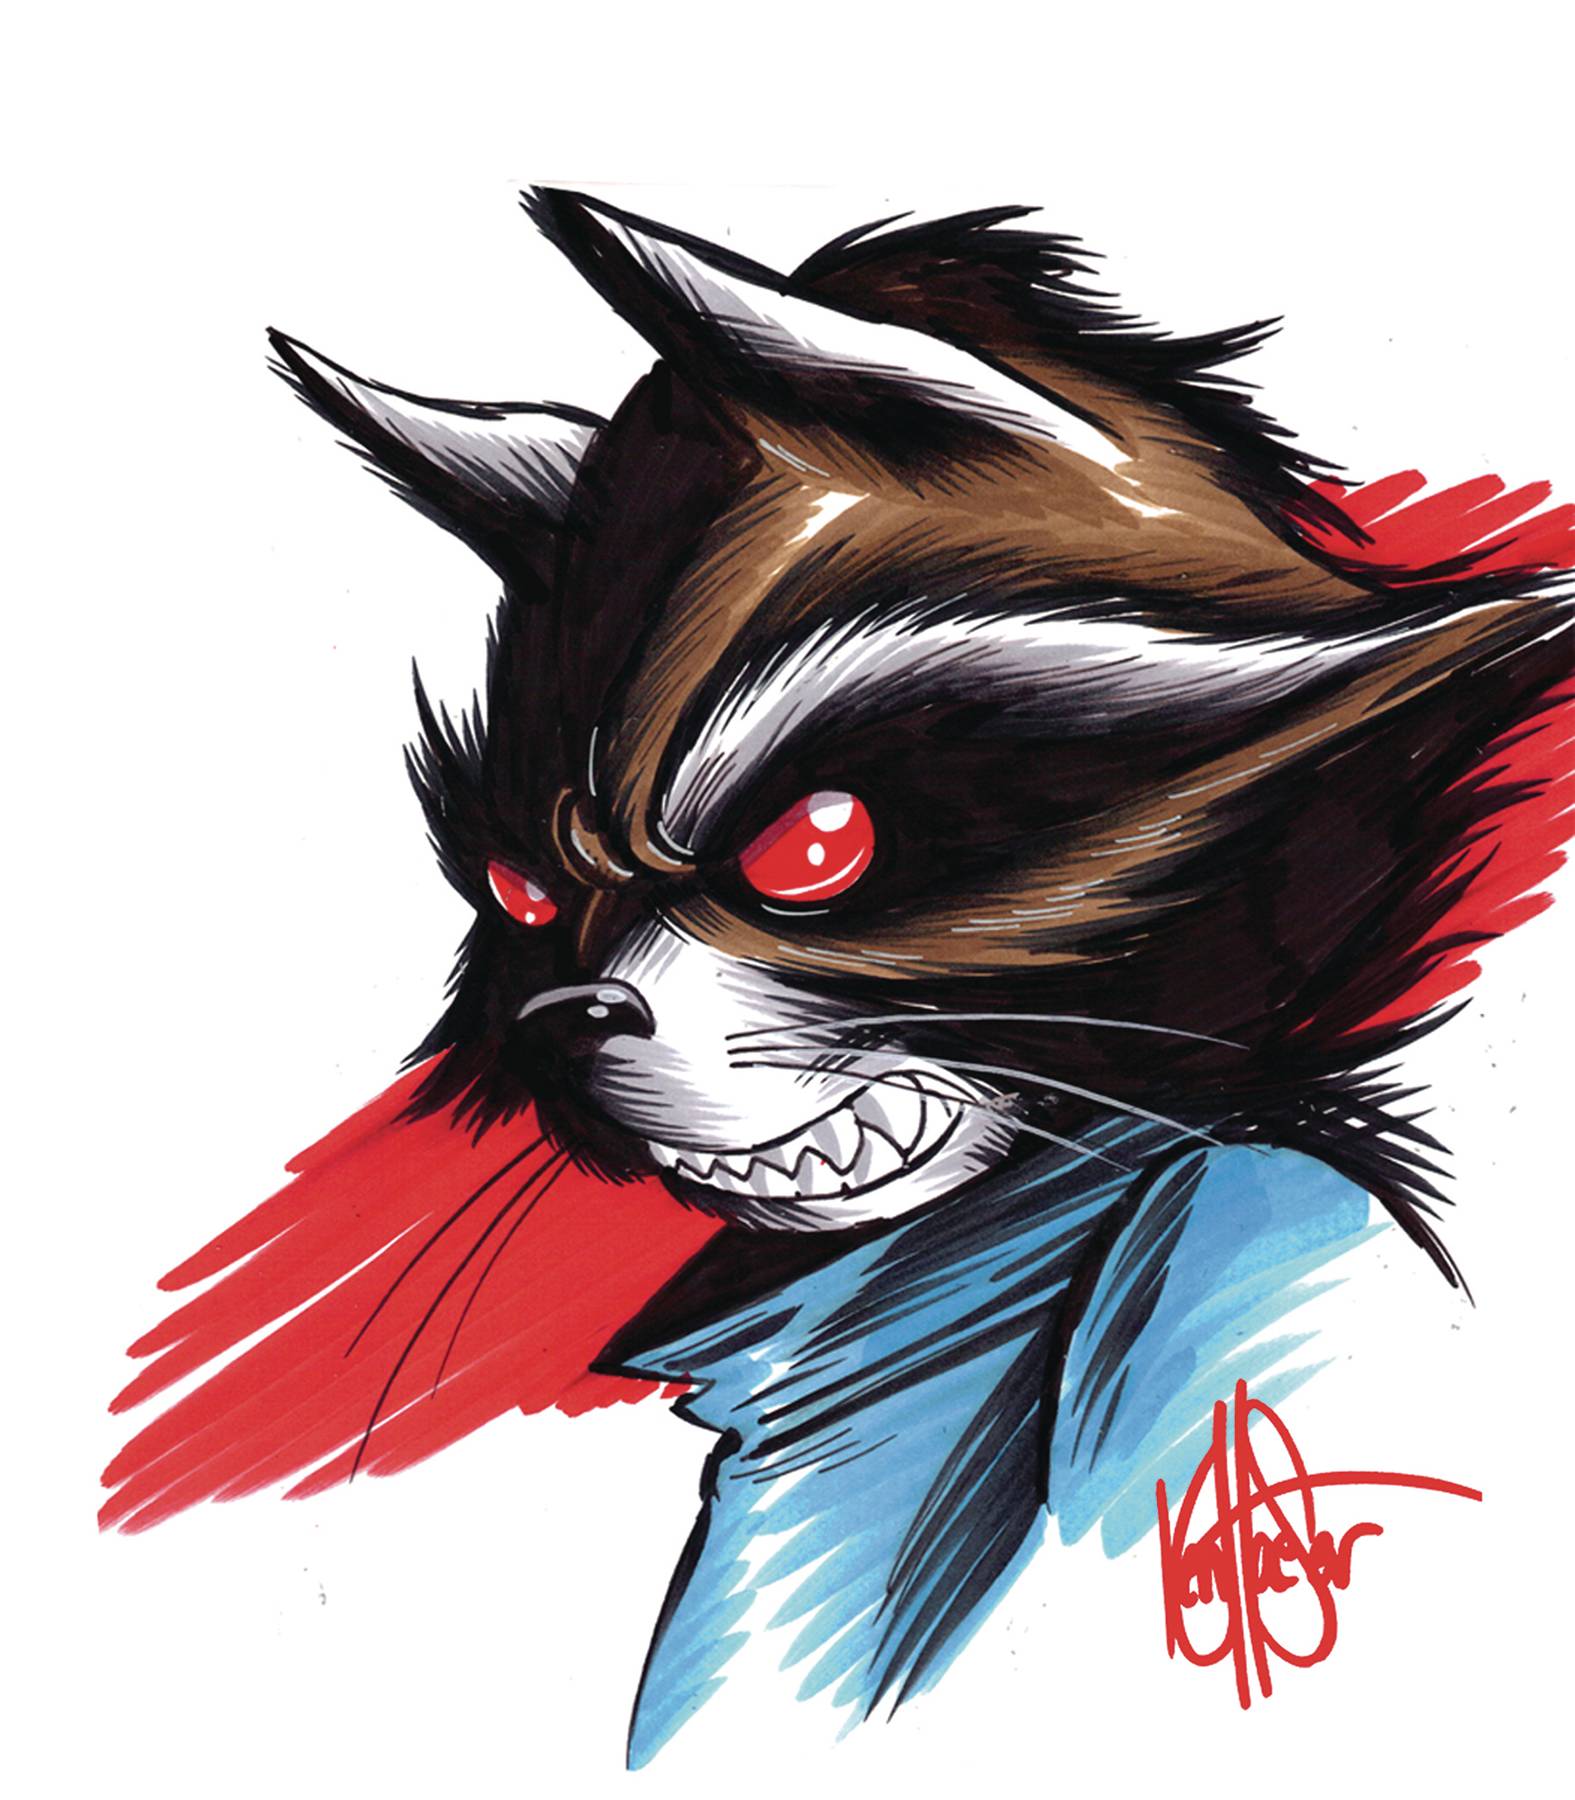 Skottie Young to draw Rocket Raccoon series